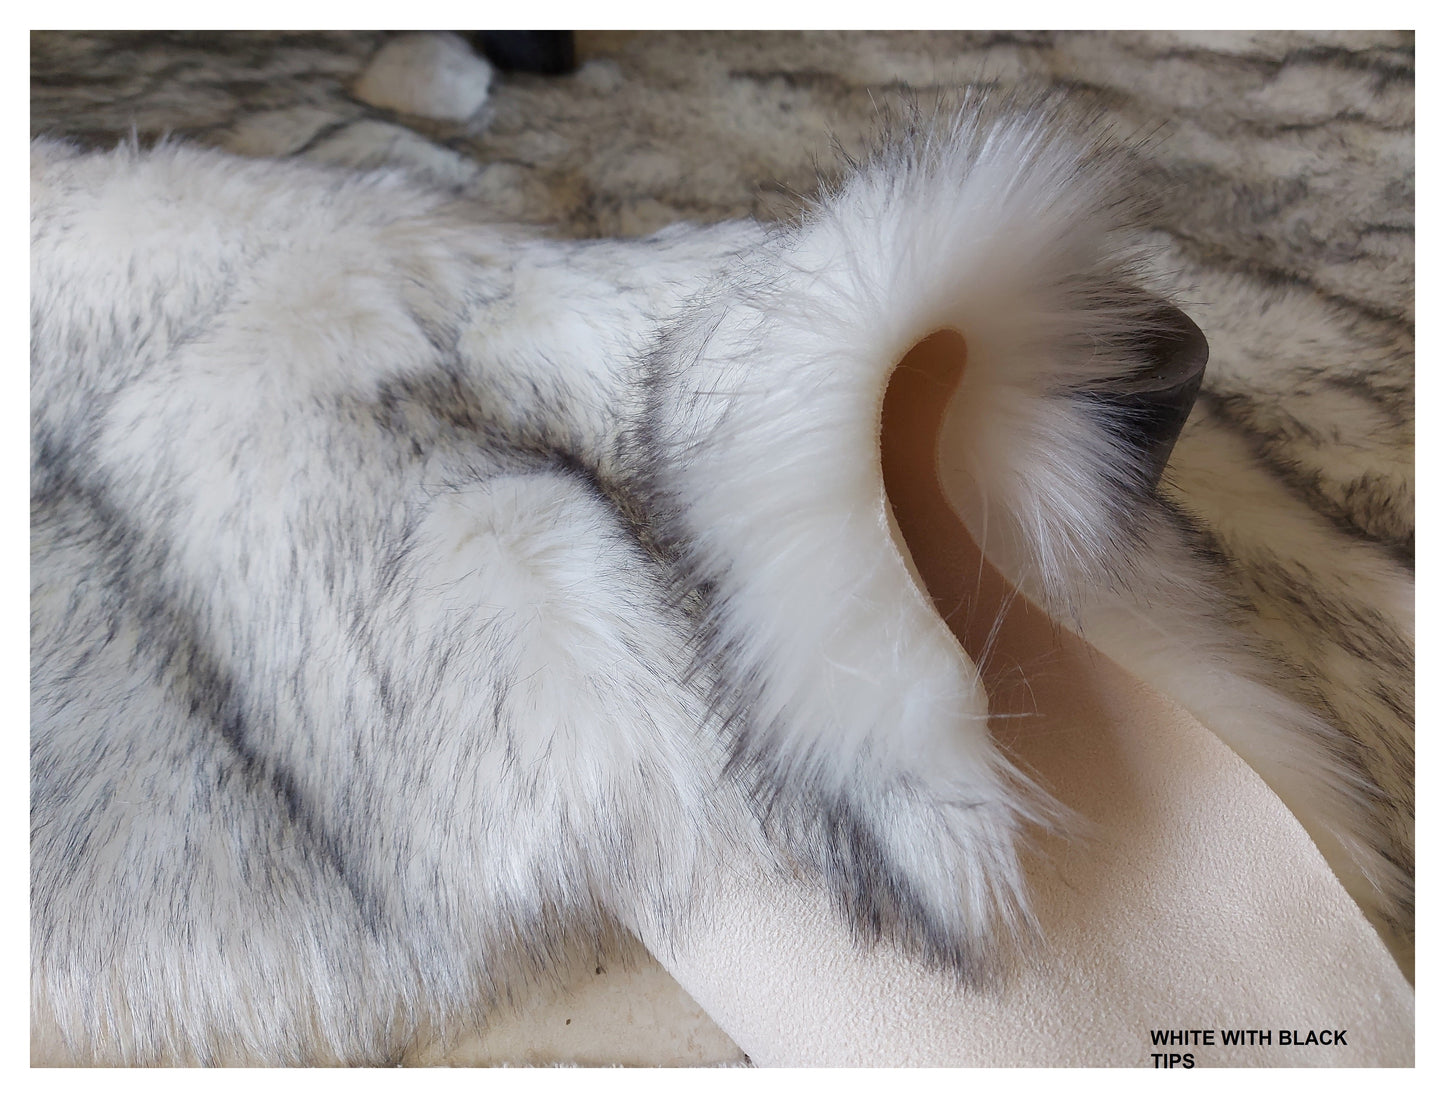 Faux sheepskin rug Oval Shaped 6'X9'(180cm x 270cm)